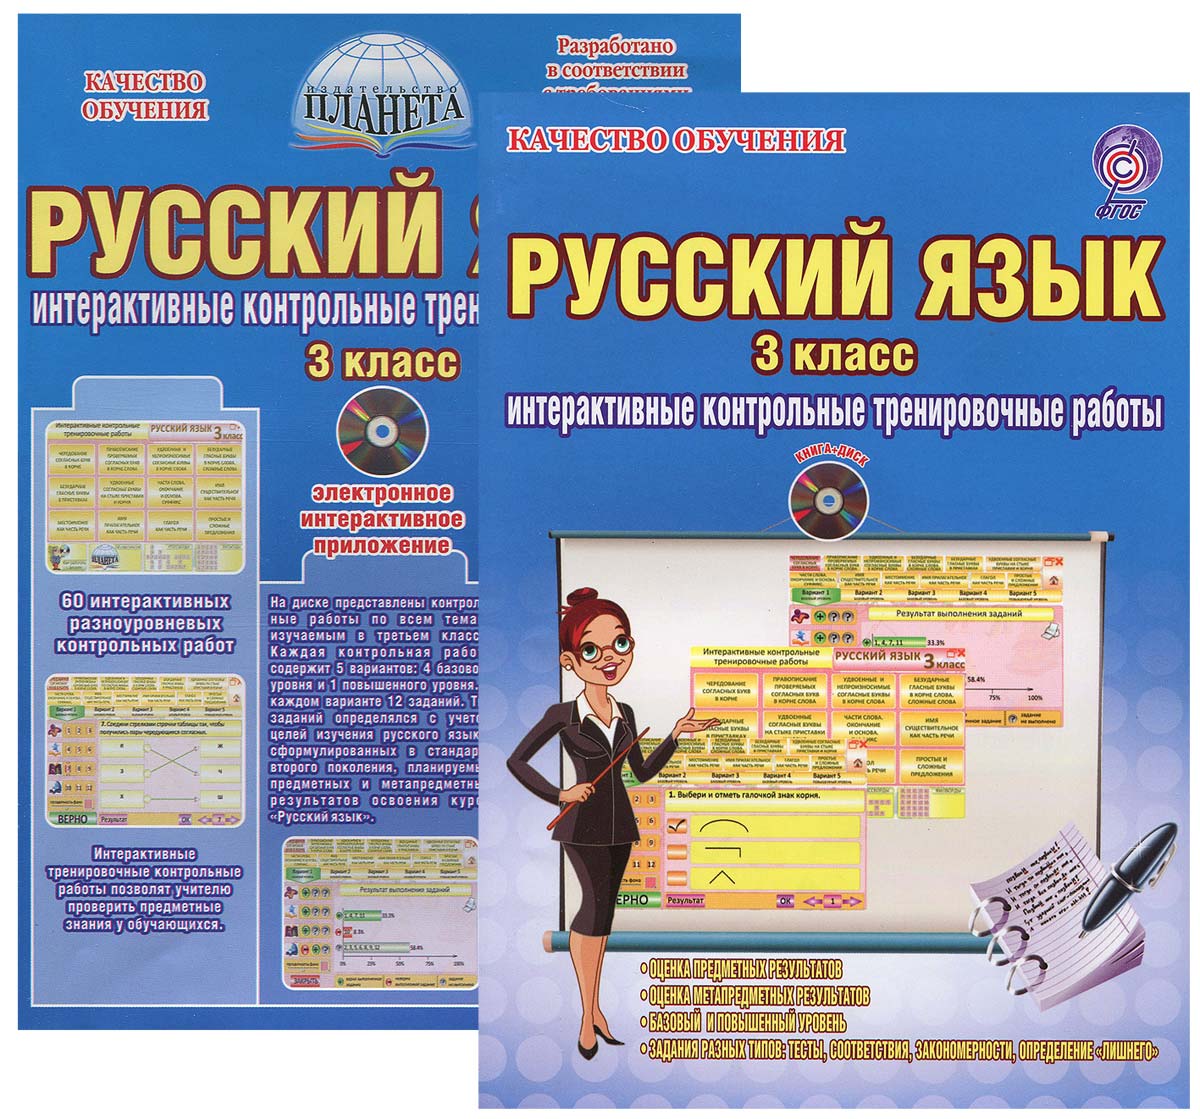 Русский язык. 3 класс. Интерактивные контрольные тренировочные работы. Дидактическое пособие с электронным интерактивным приложением (+ CD)